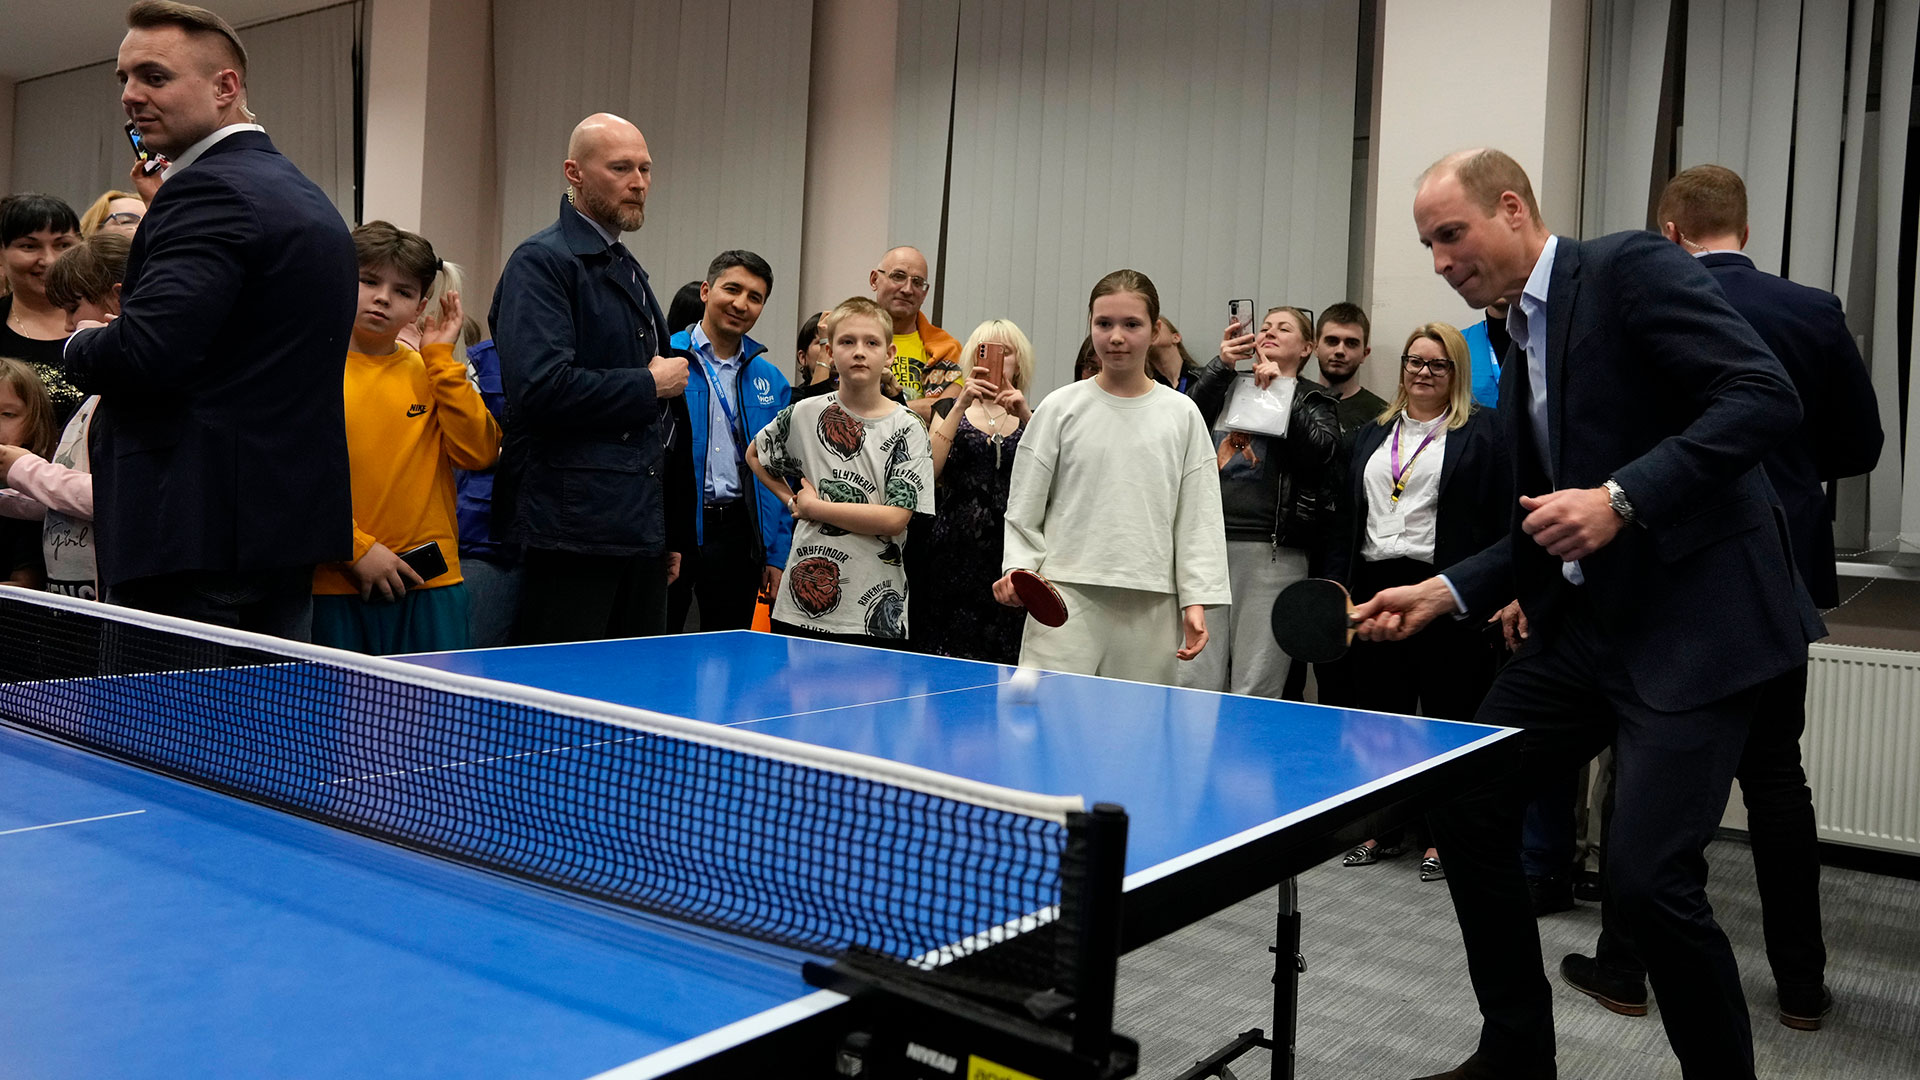 El príncipe William visitó un centro de refugiados ucranianos en Polonia y jugó al tenis de mesa con niños